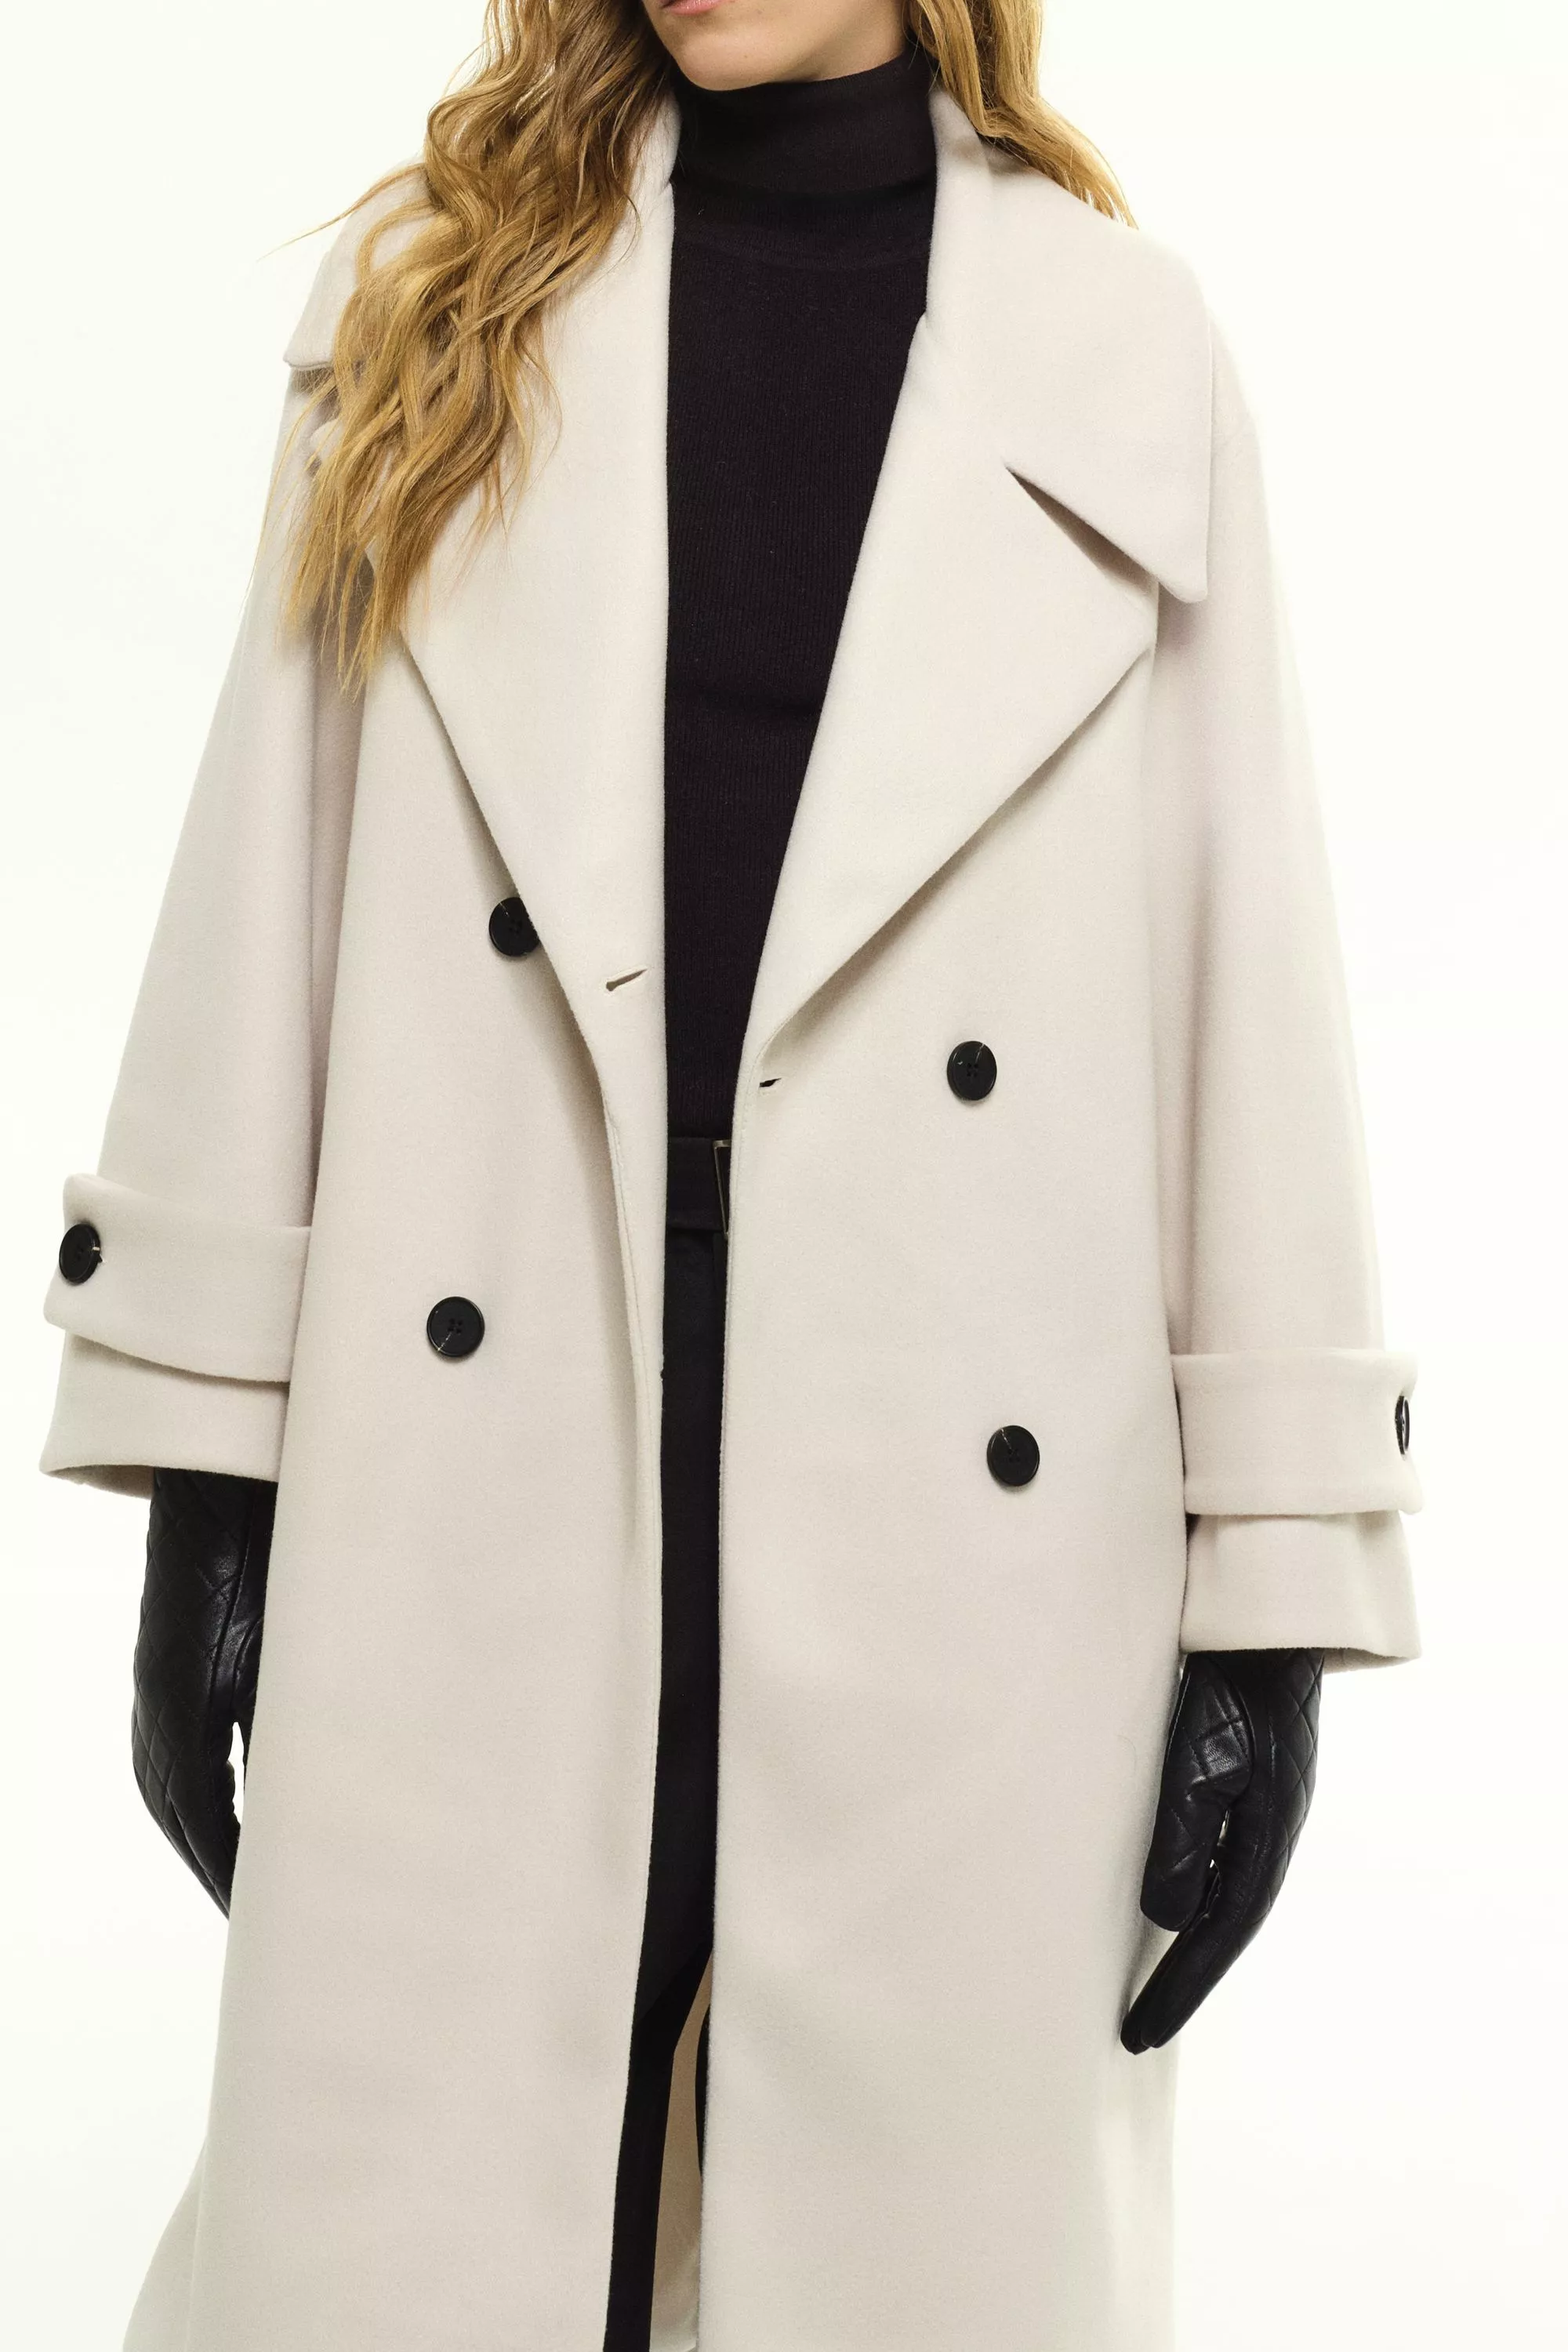 Damen Zweireihiger Mantel in Weiß von Ricano, Detailansicht am Model